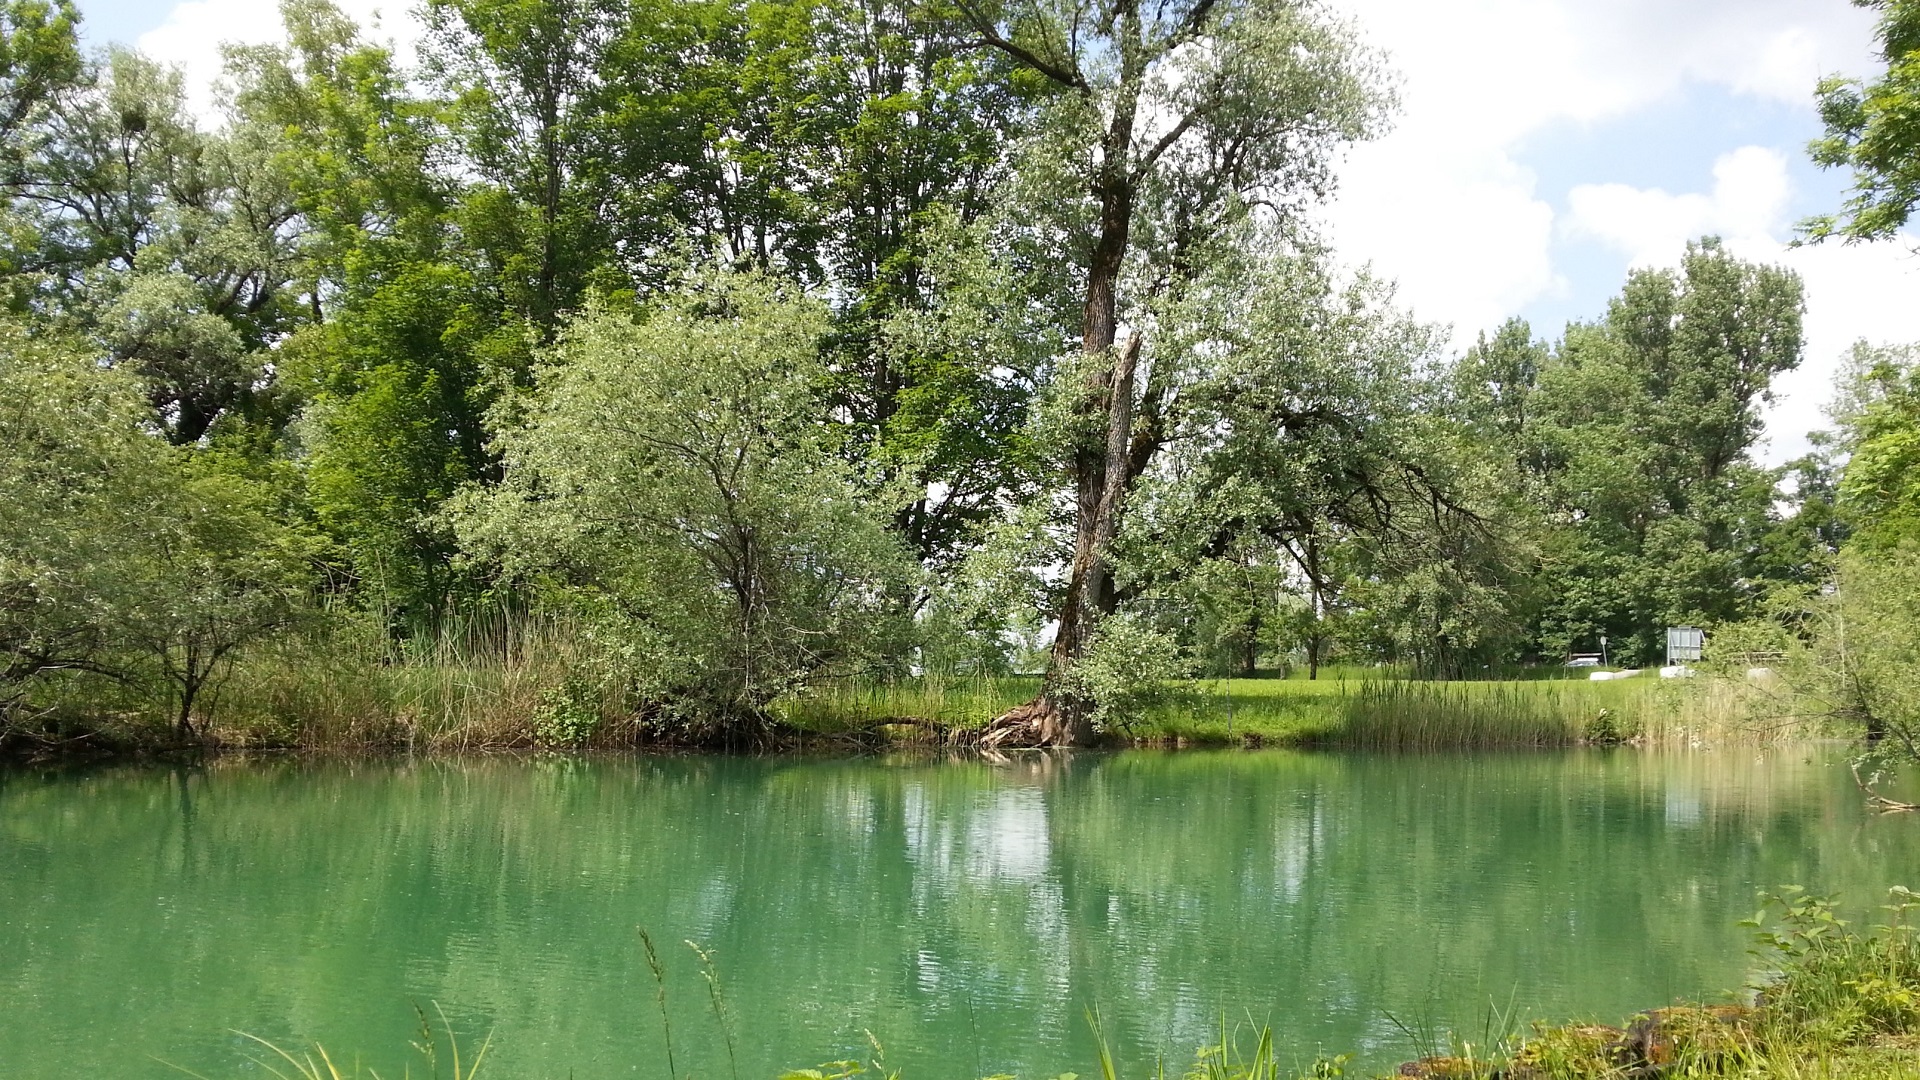 Der südliche Arm des Loisach-Auslaufes am Kochelsee wird an einem Wehr aufgestaut und hat tiefgrün gefärbtes Wasser, während das Ufer von Bäumen gesäumt wird